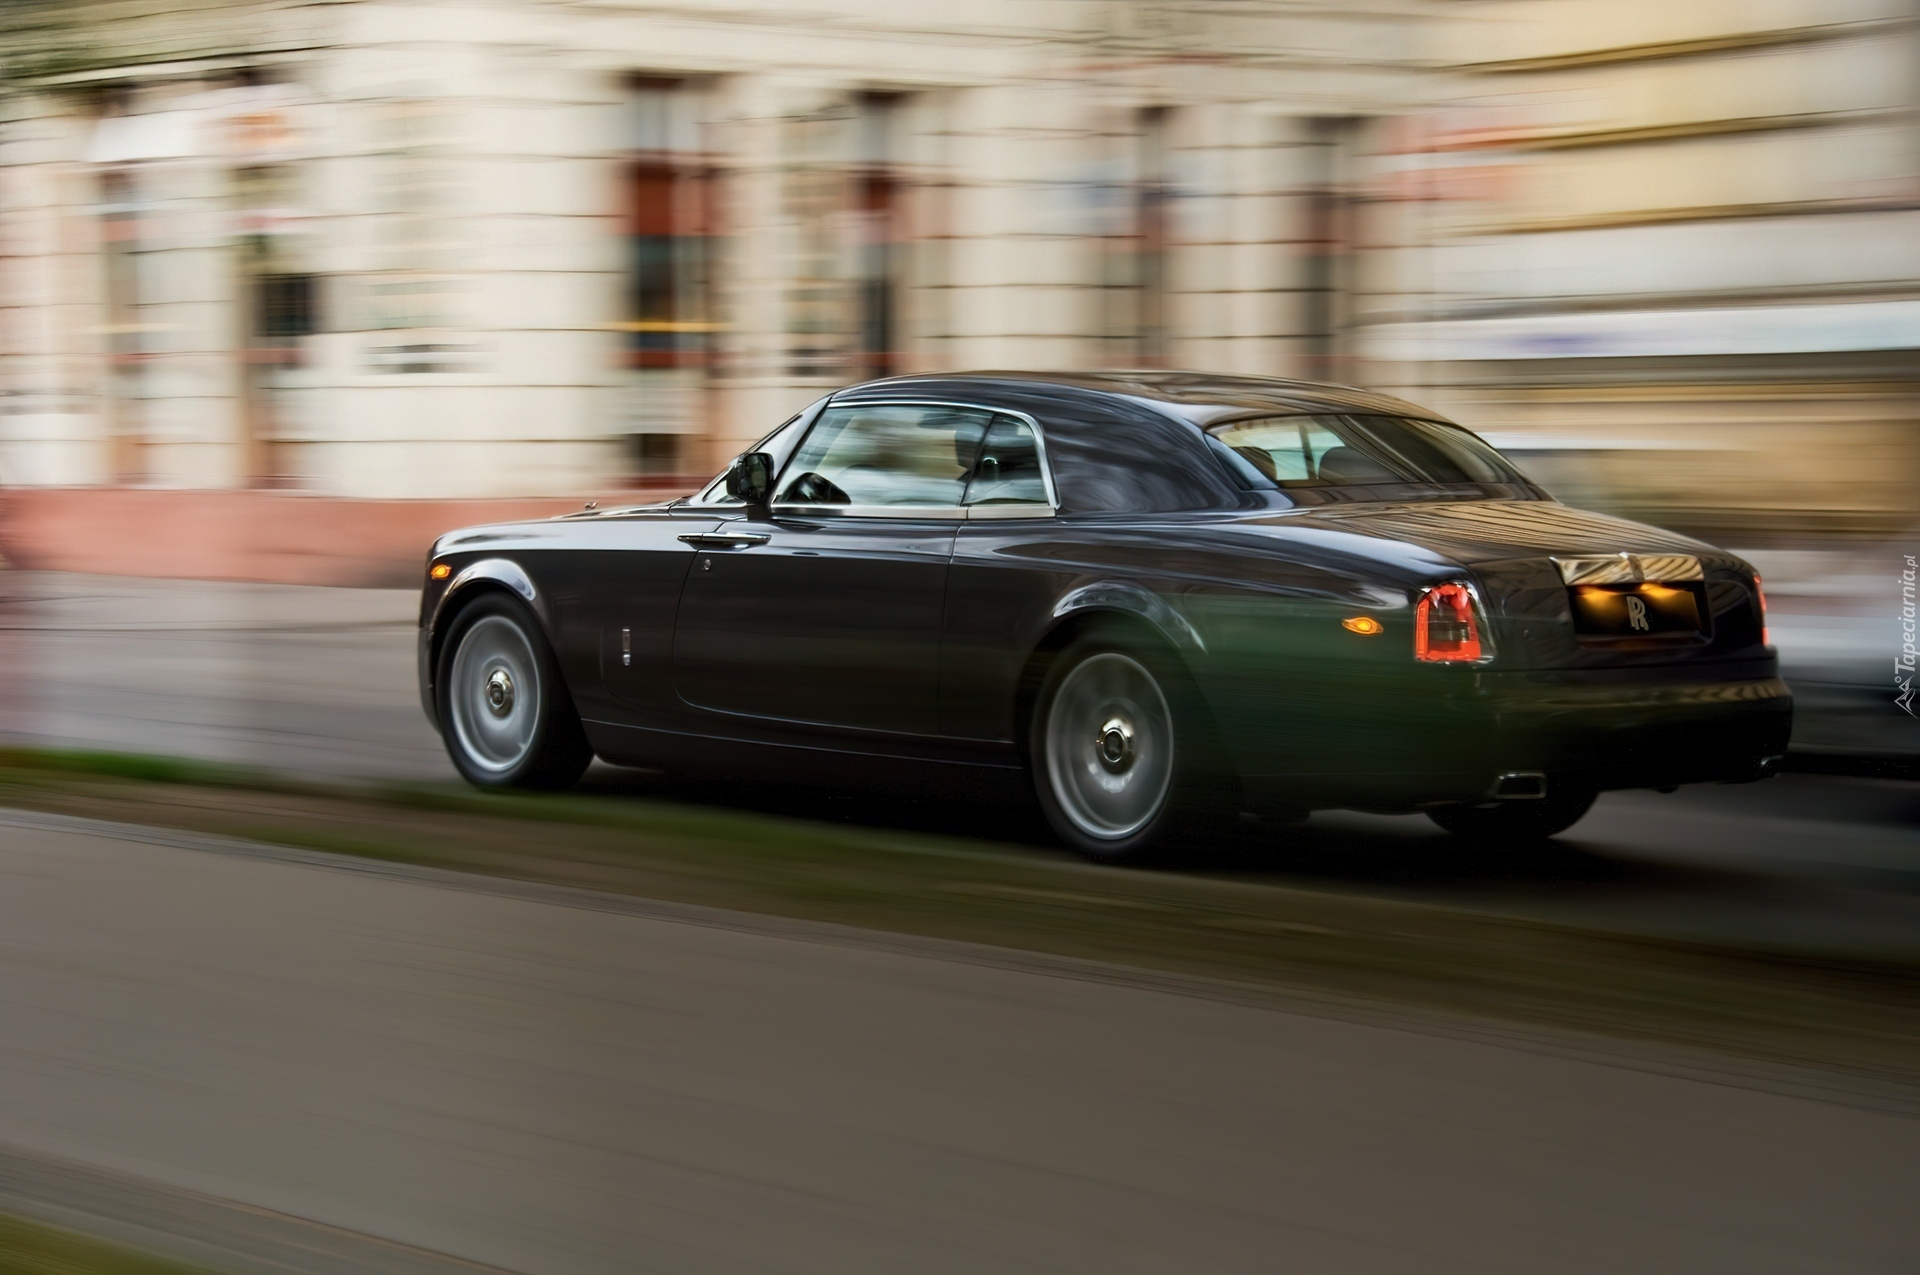 Rolls-Royce Phantom Coupe, Miasto, Ulica